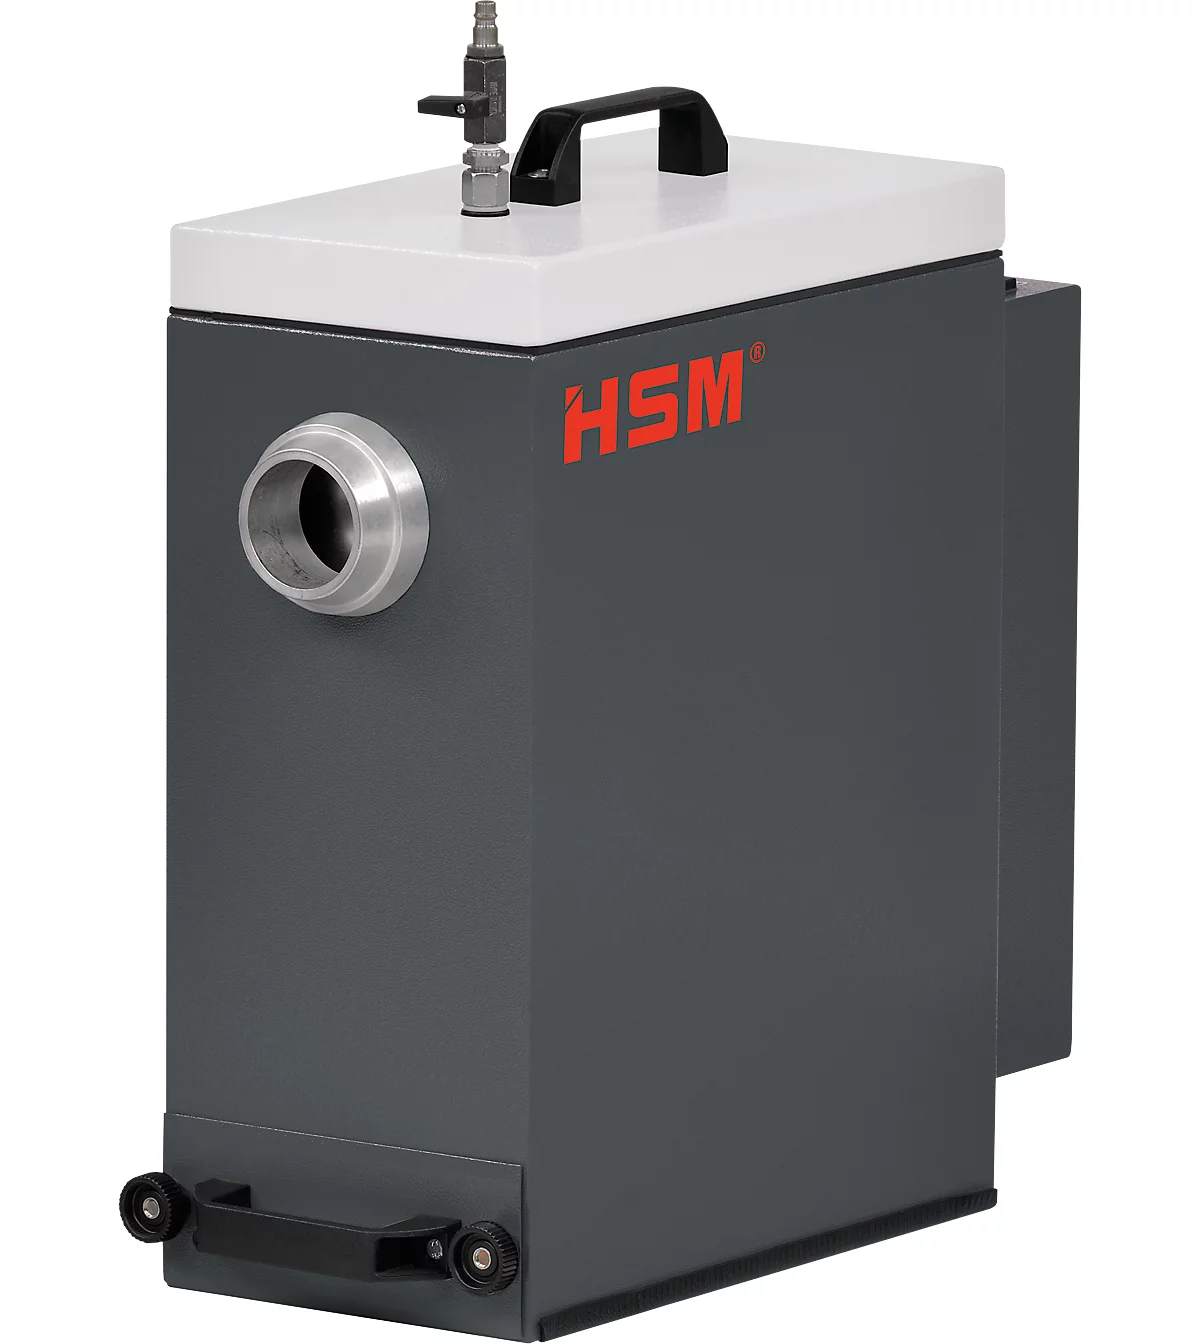 Entstauber HSM DE 1-8, für Verpackungspolstermaschine HSM ProfiPack P425 mit Staubabsaugungs-Anschluss, Volumen 1 l, 1 kW, Staubklasse M, schwarz-grau